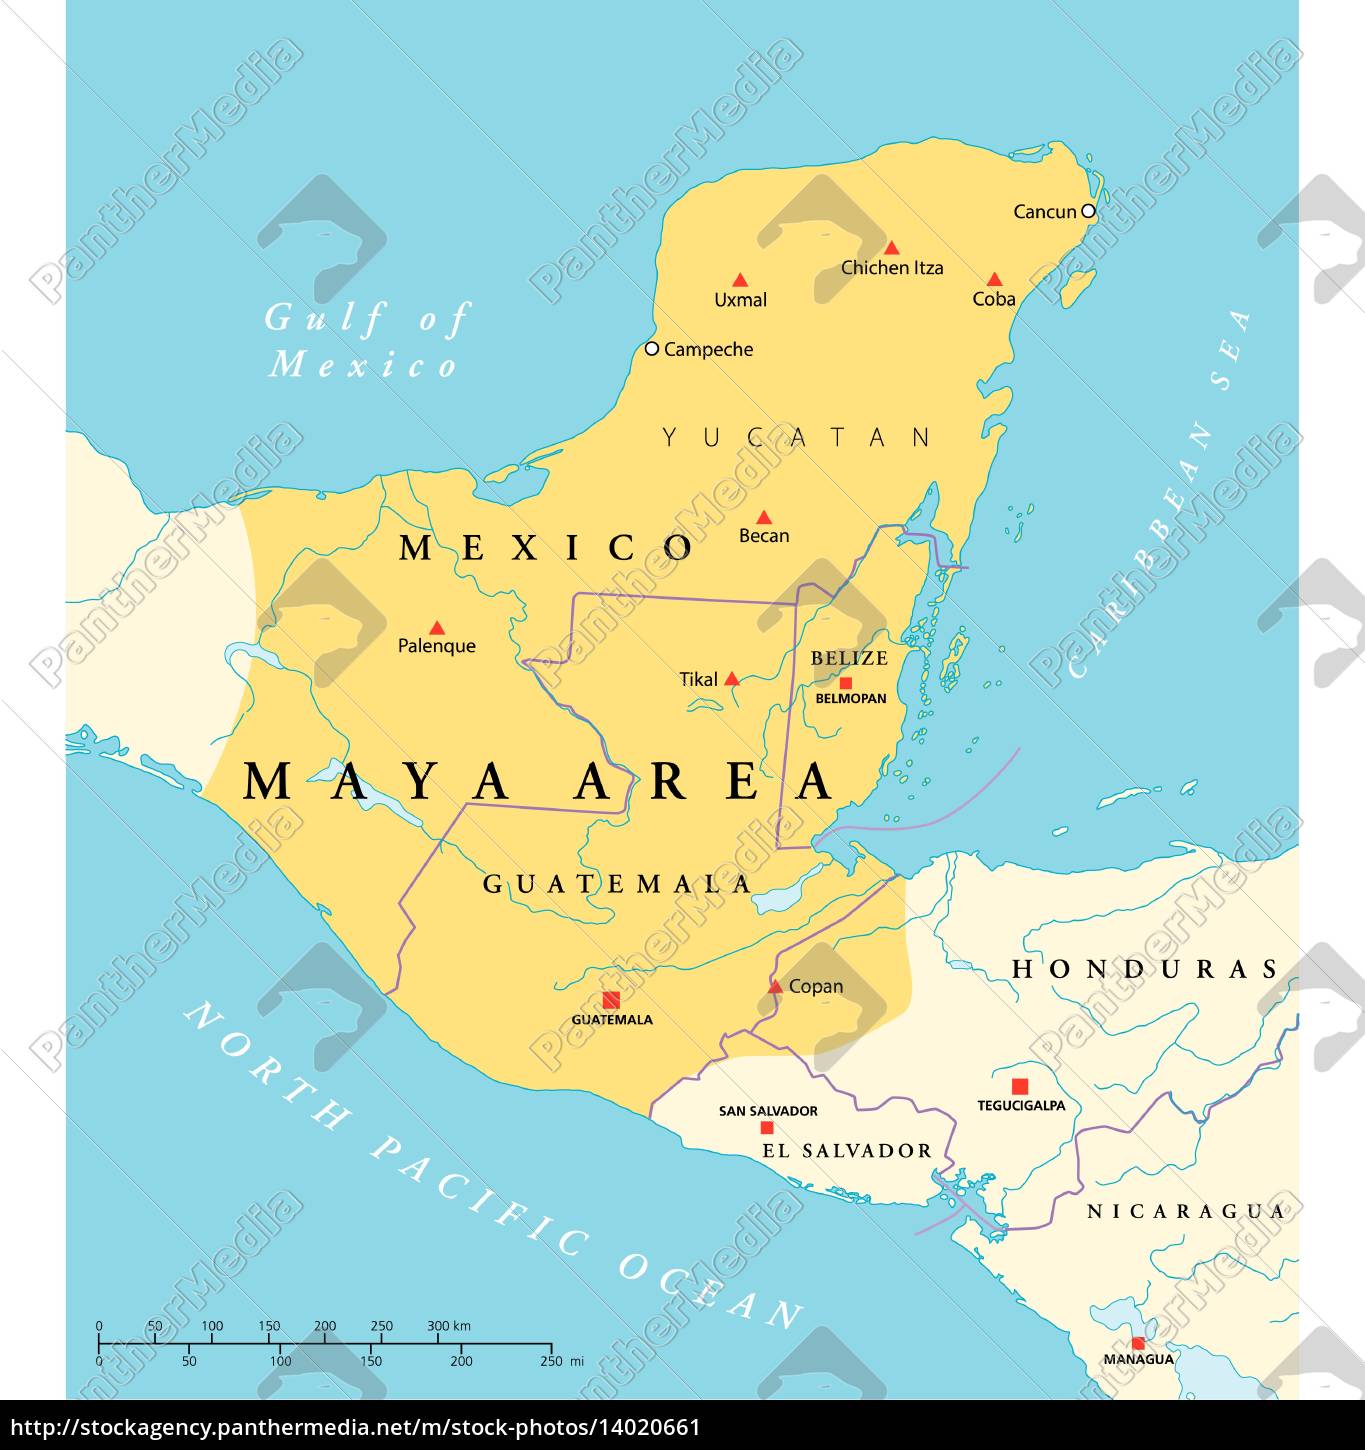 karte maya hochkultur der gegend - Lizenzfreies Bild - #14020661